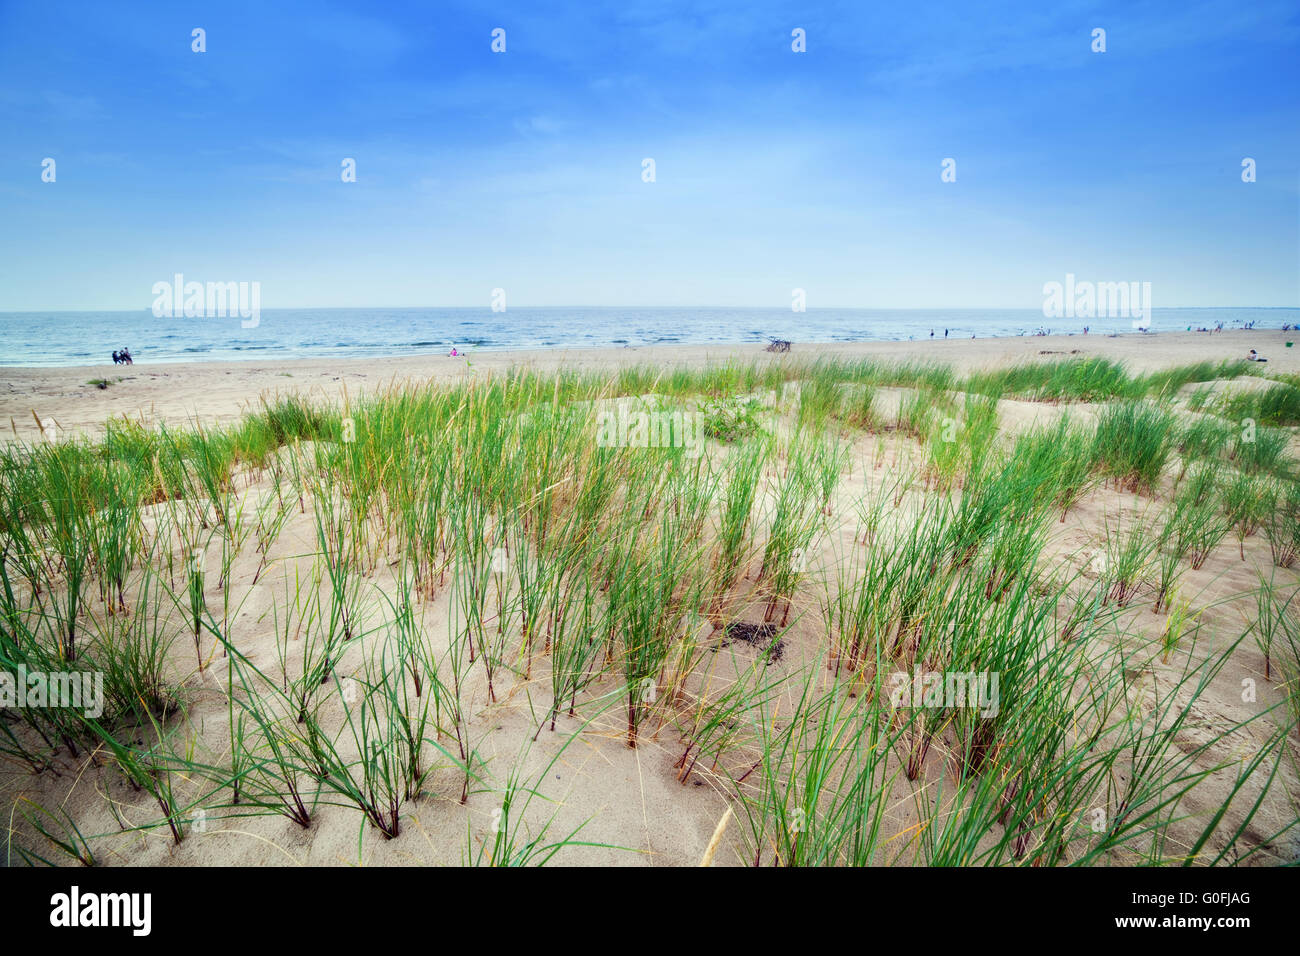 Calma spiaggia con dune e l'erba verde. Ocean in background Foto Stock